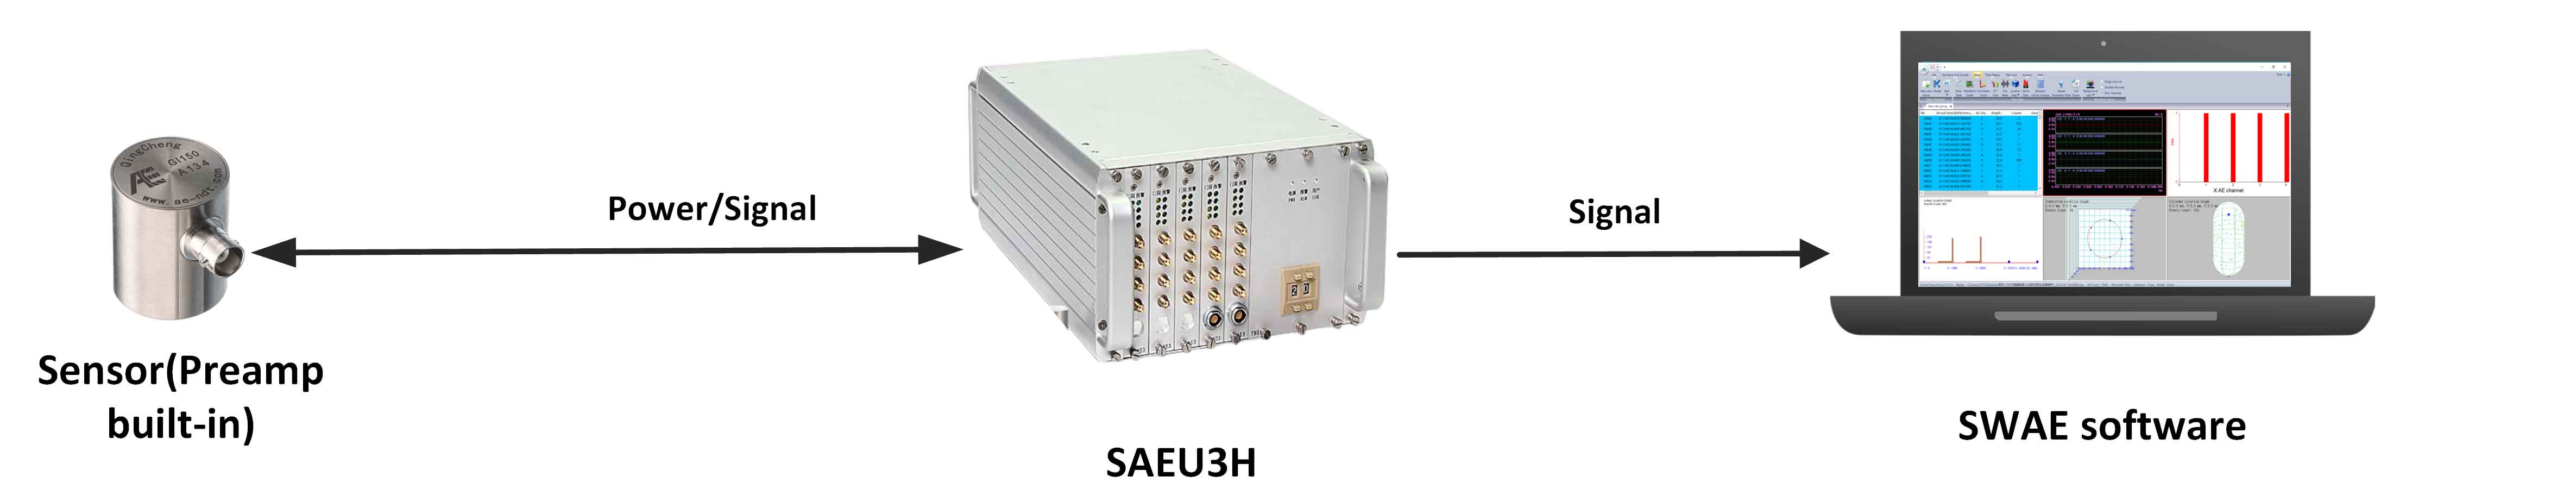 МНОГОКАНАЛЬНАЯ СИСТЕМА AE SAEU3H, система SEAU3H AE с поддержкой USB3.0 (стандартно)